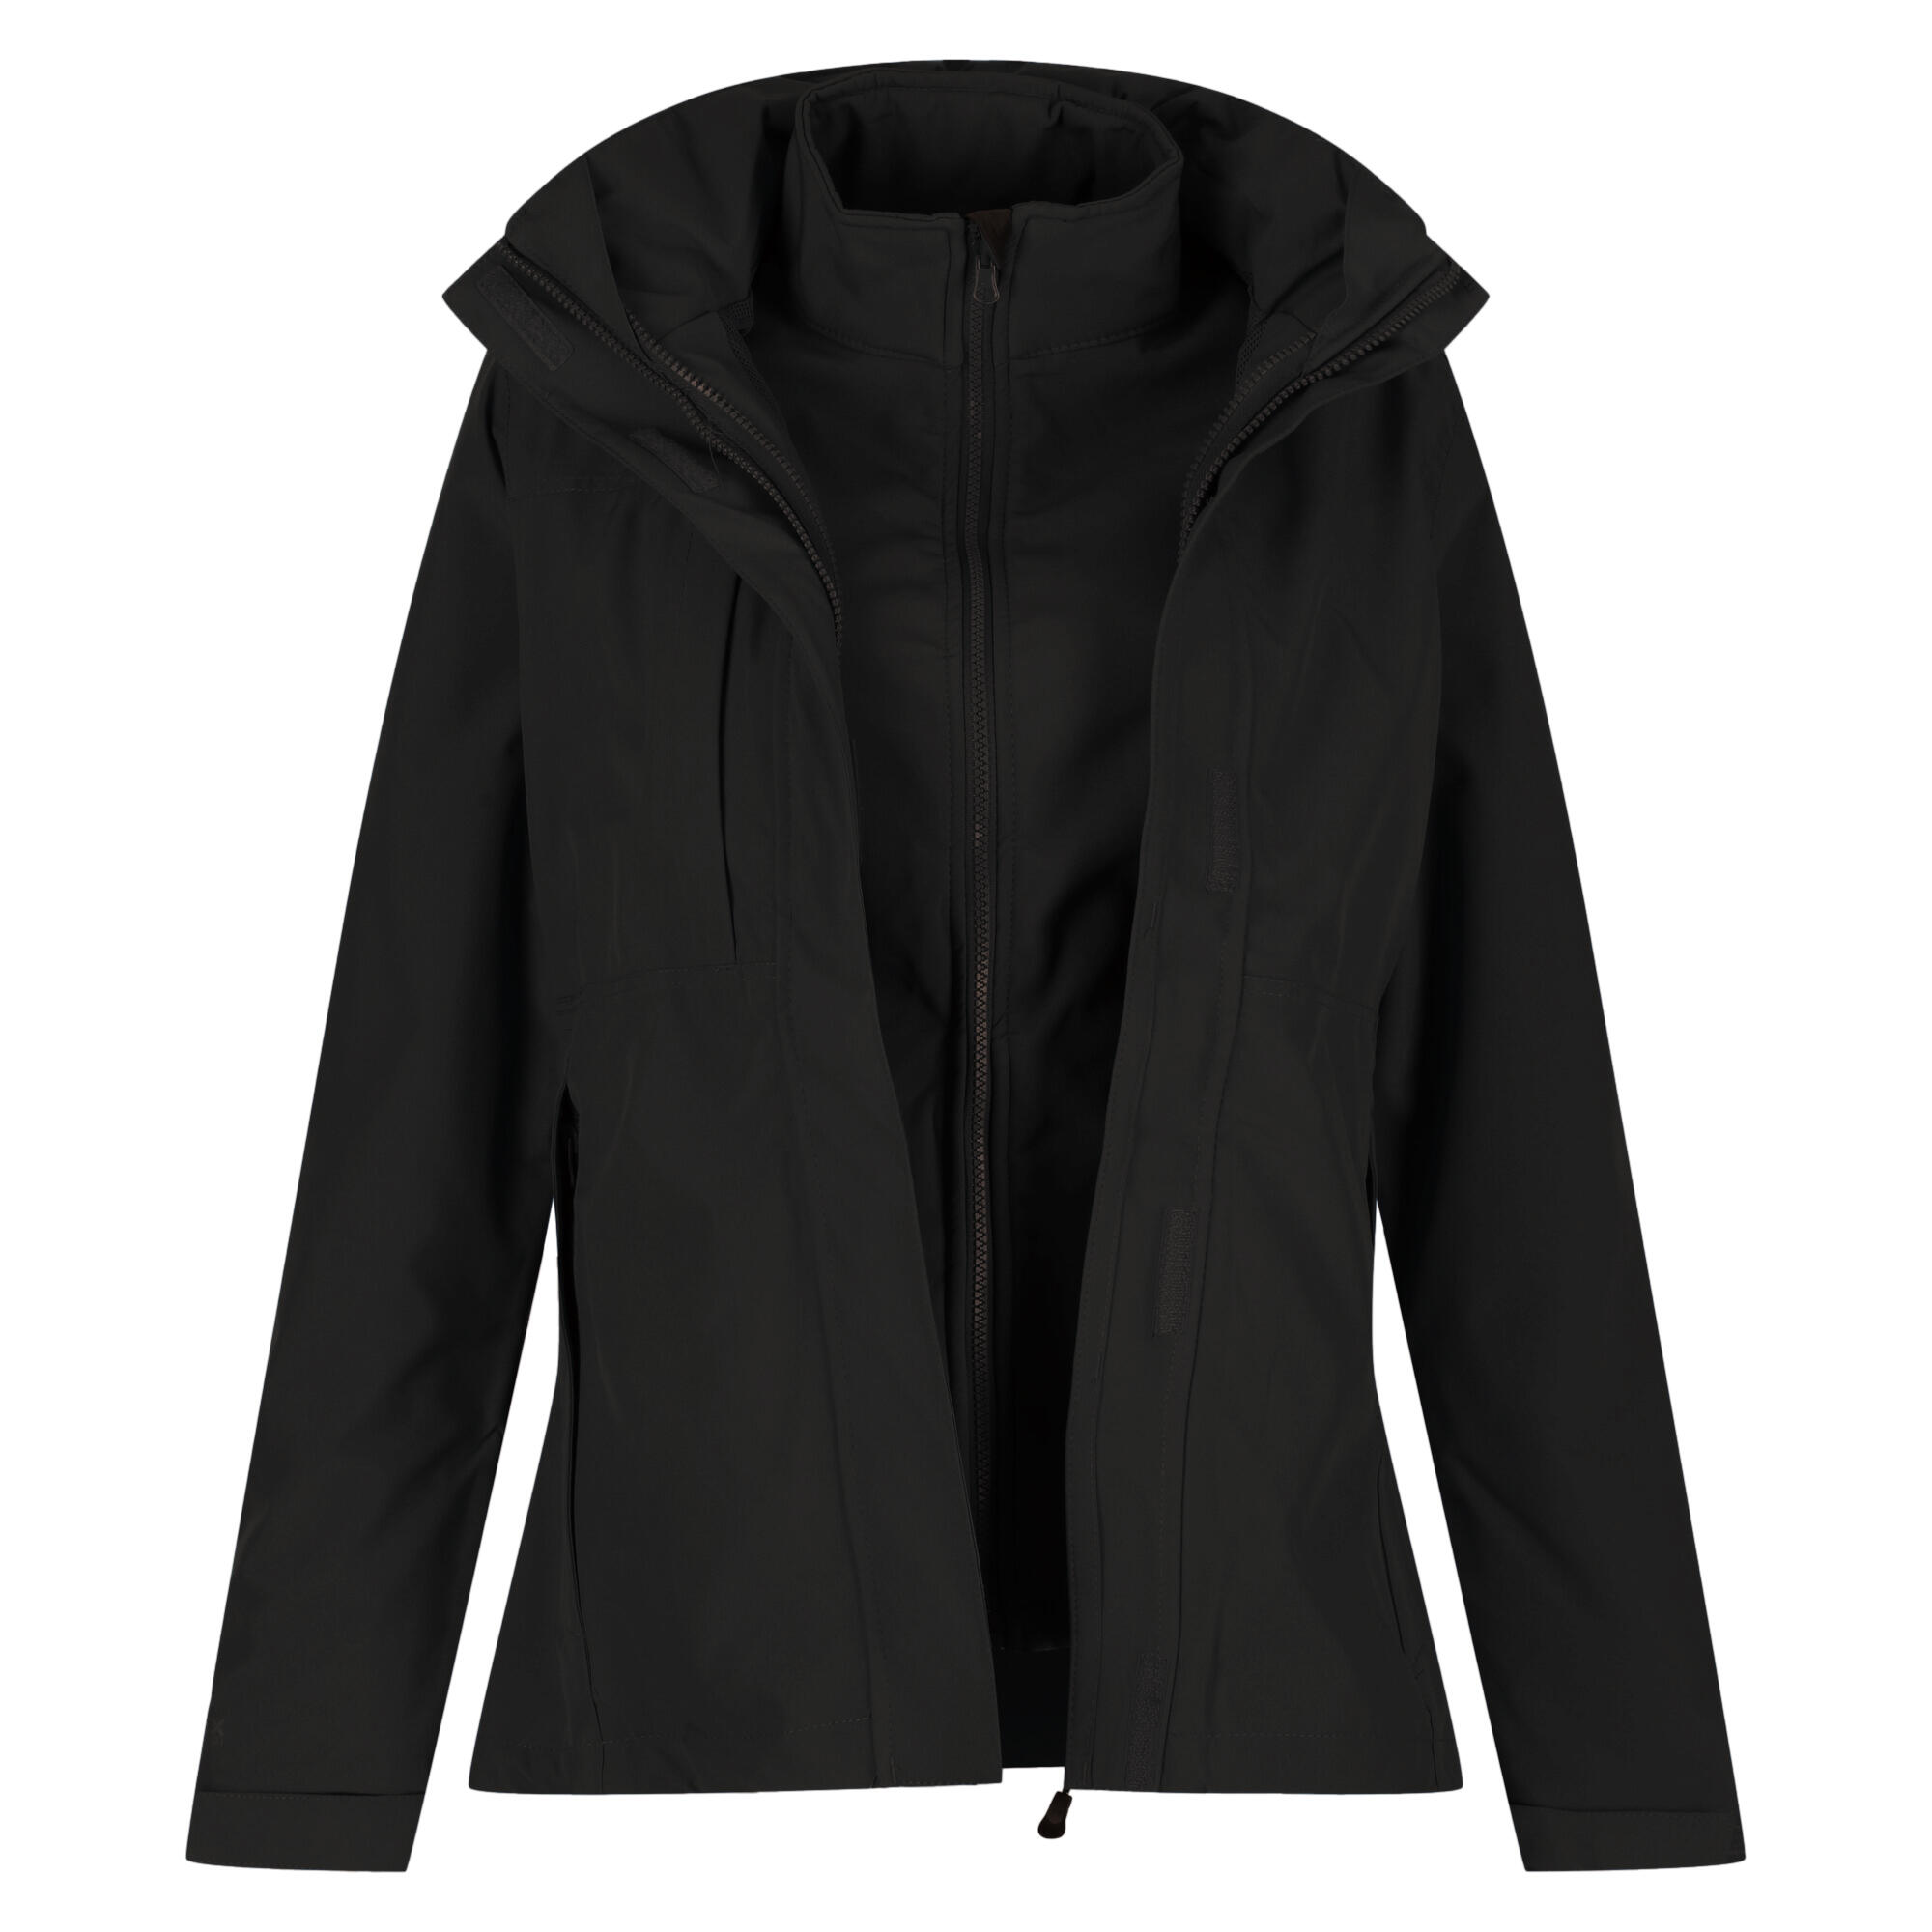 REGATTA Professional Womens/Ladies Kingsley 3in1 Waterproof Jacket (Black)